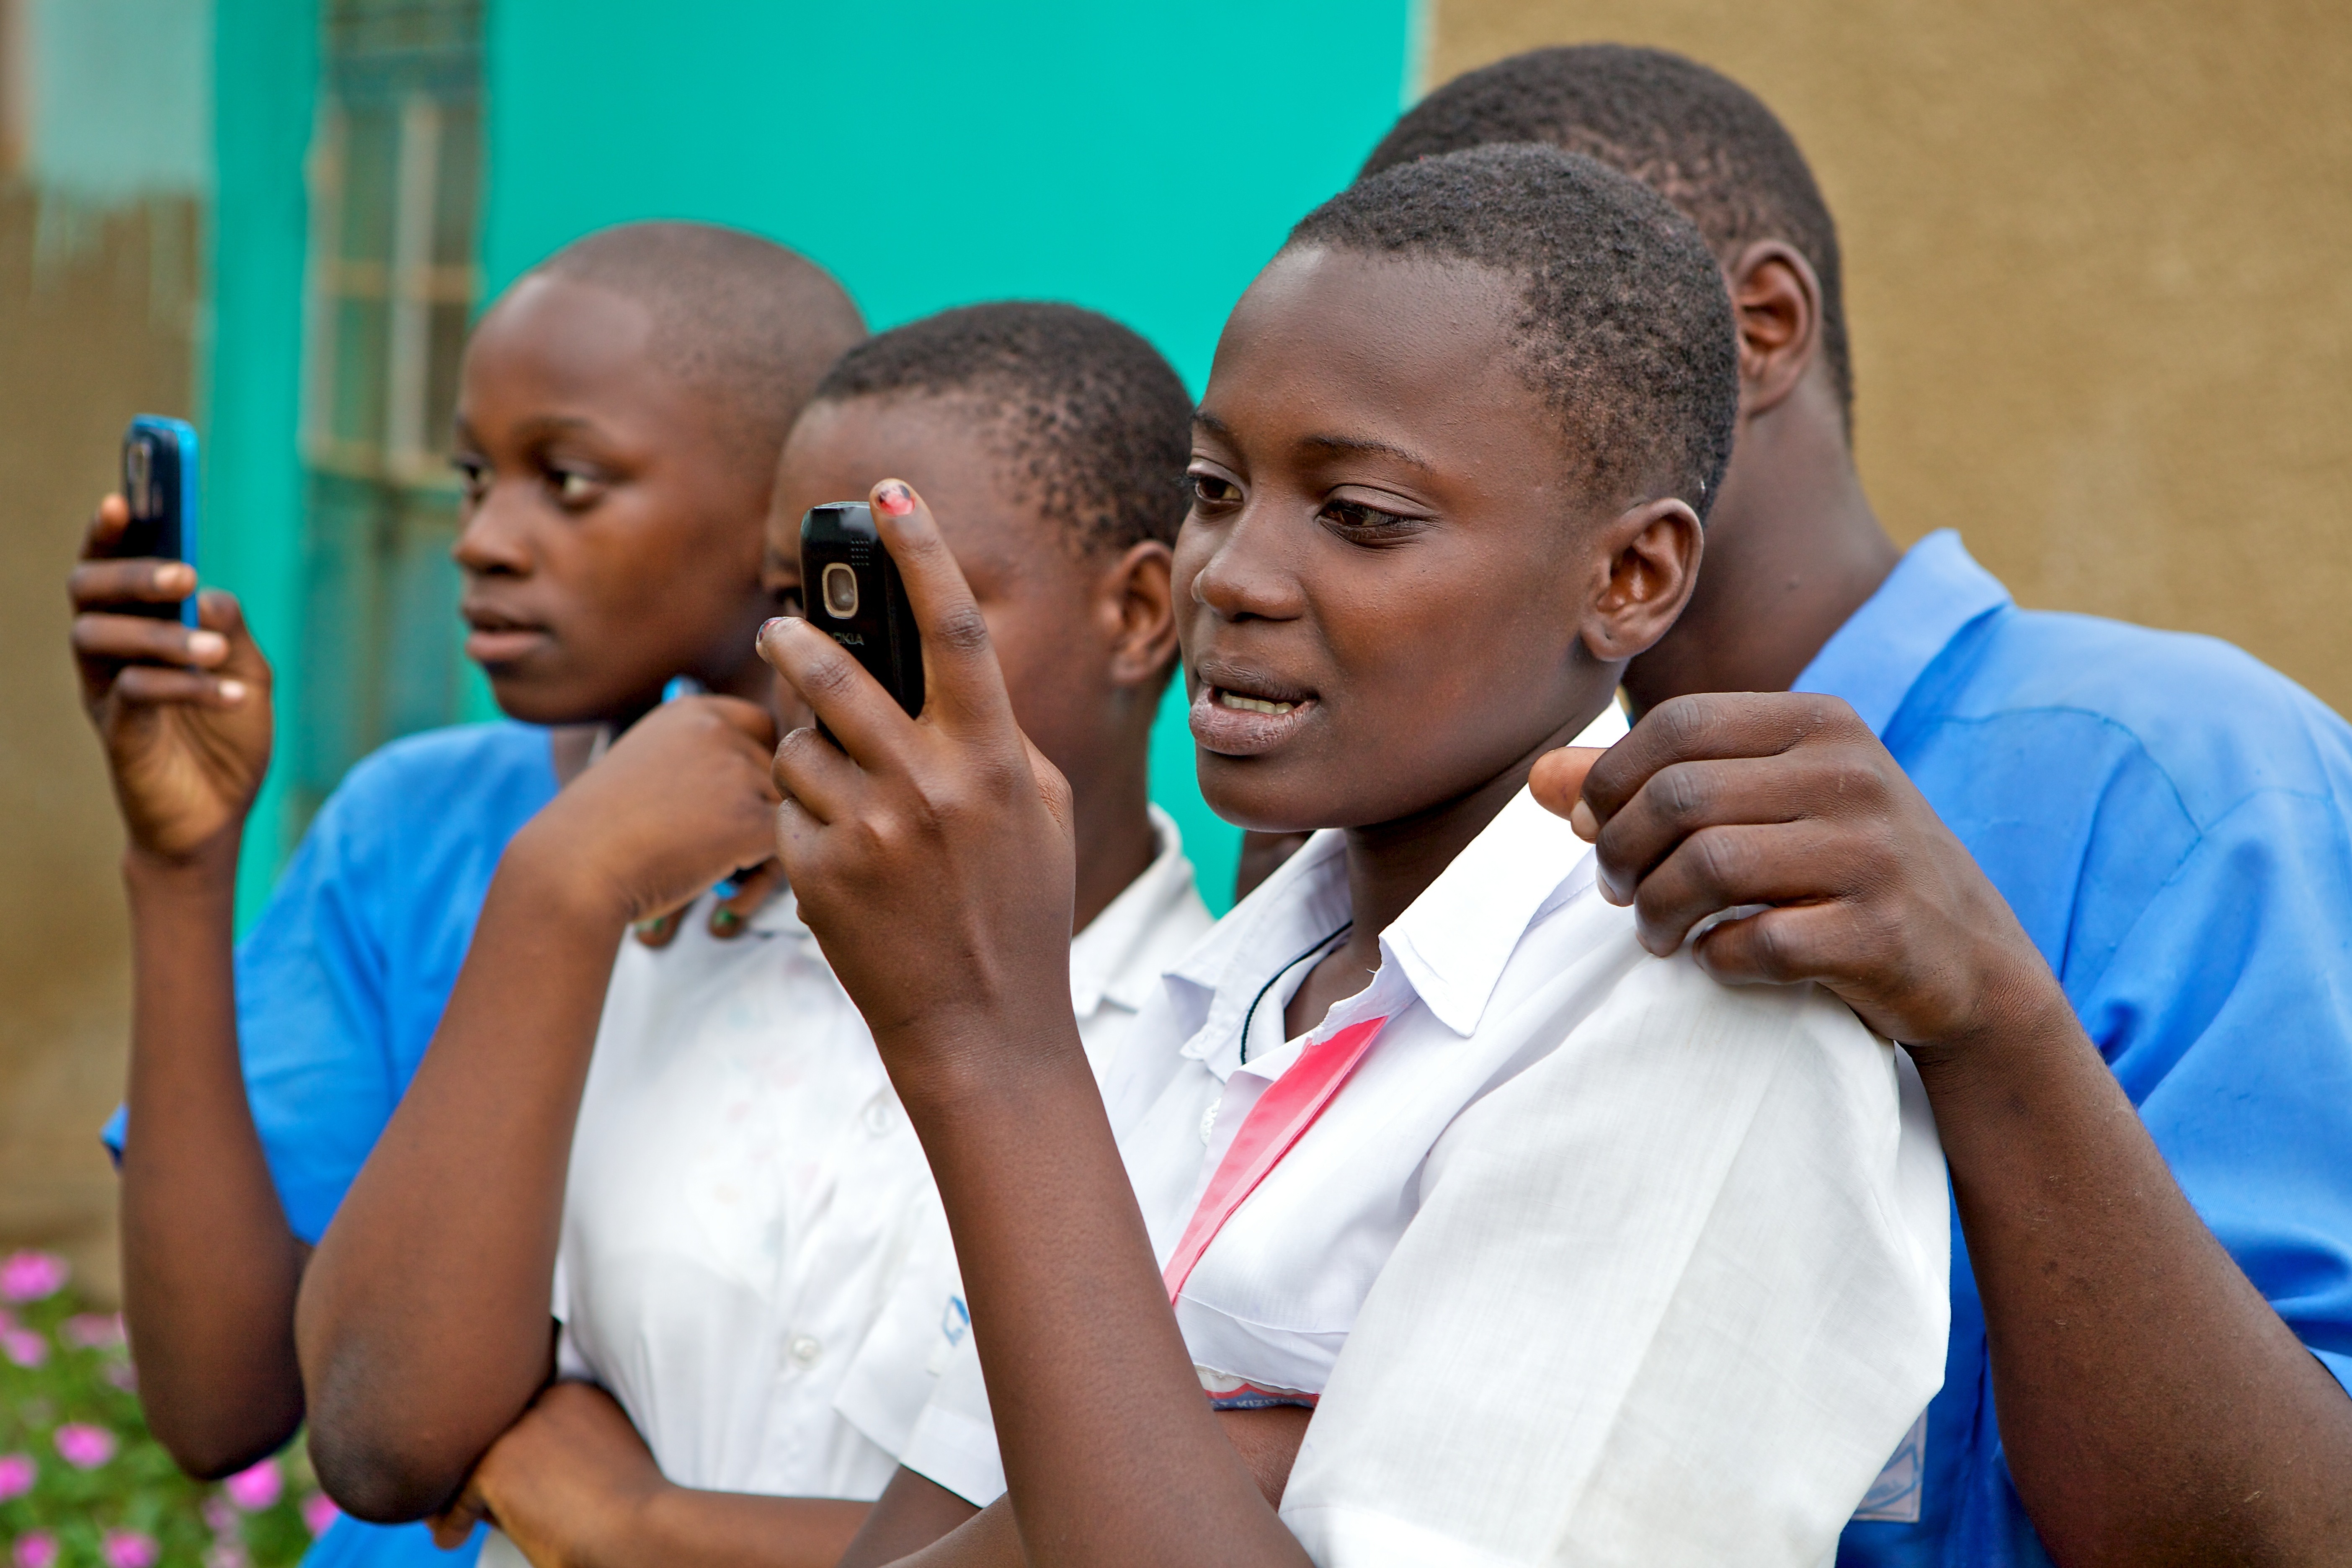 Children using mobile phones